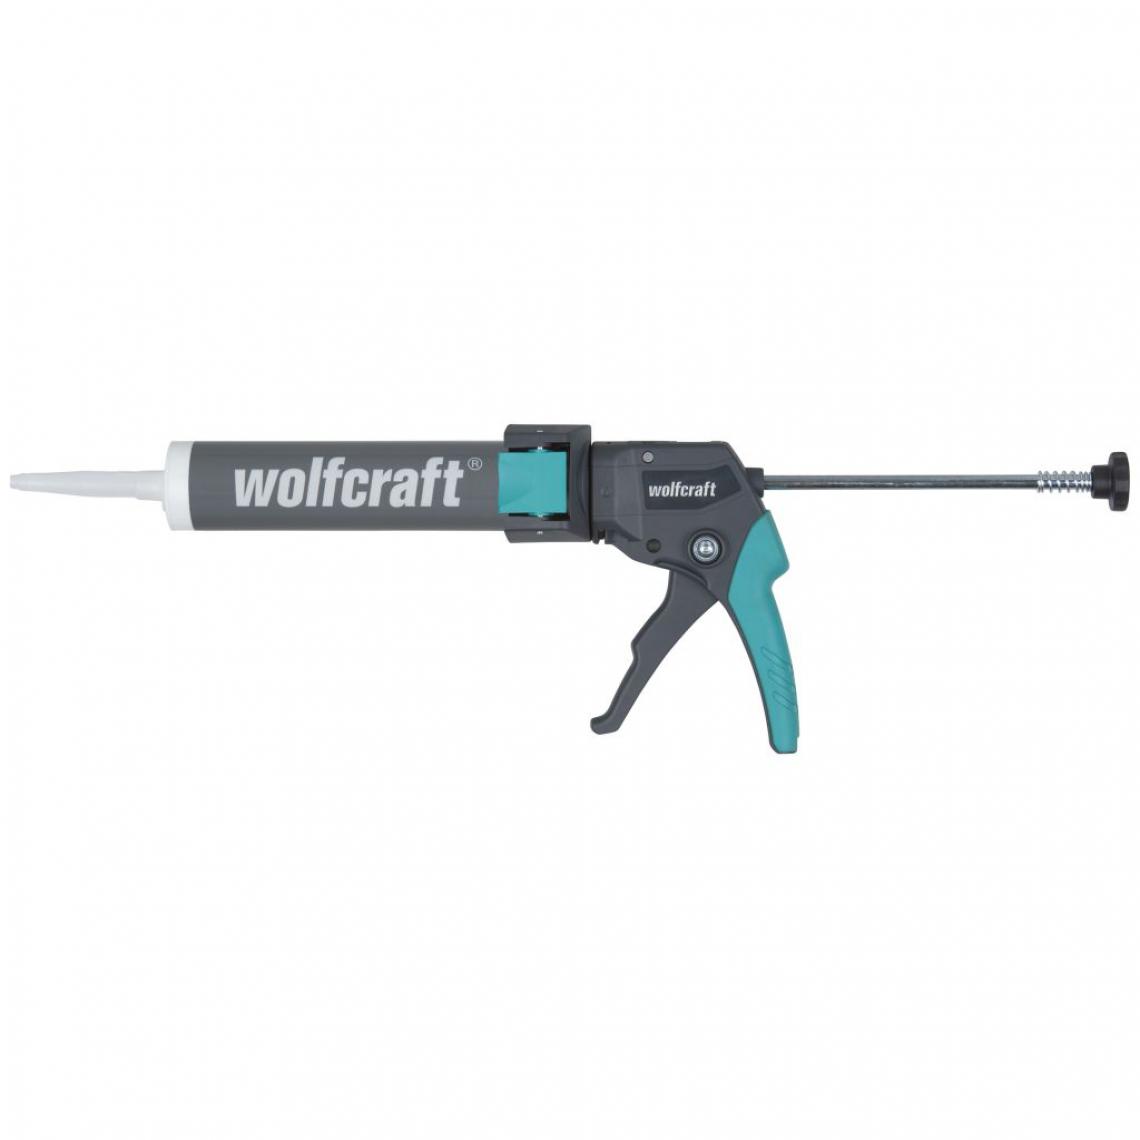 Wolfcraft - wolfcraft Pistolet de calfeutrage MG310 Compact 4357000 - Colles et pistolets à colle